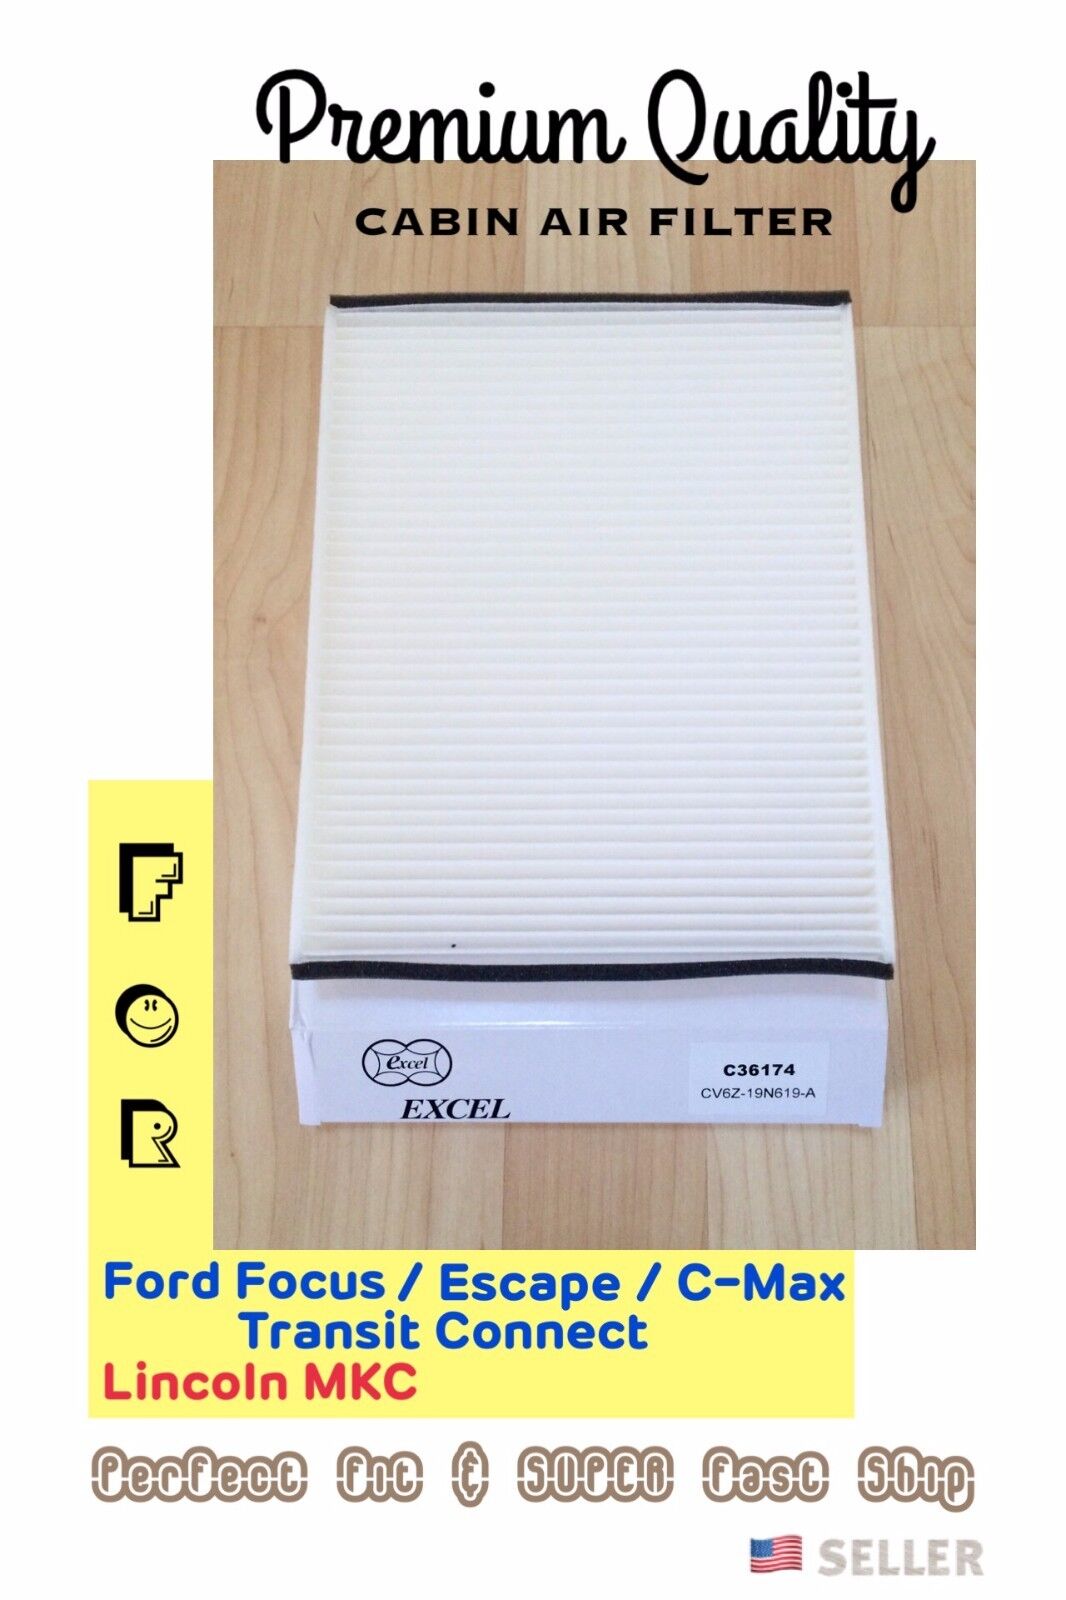 PremiumQuality Cabin Air Filter C36174 for Ford Focus Escape C-Max Transit / MKC